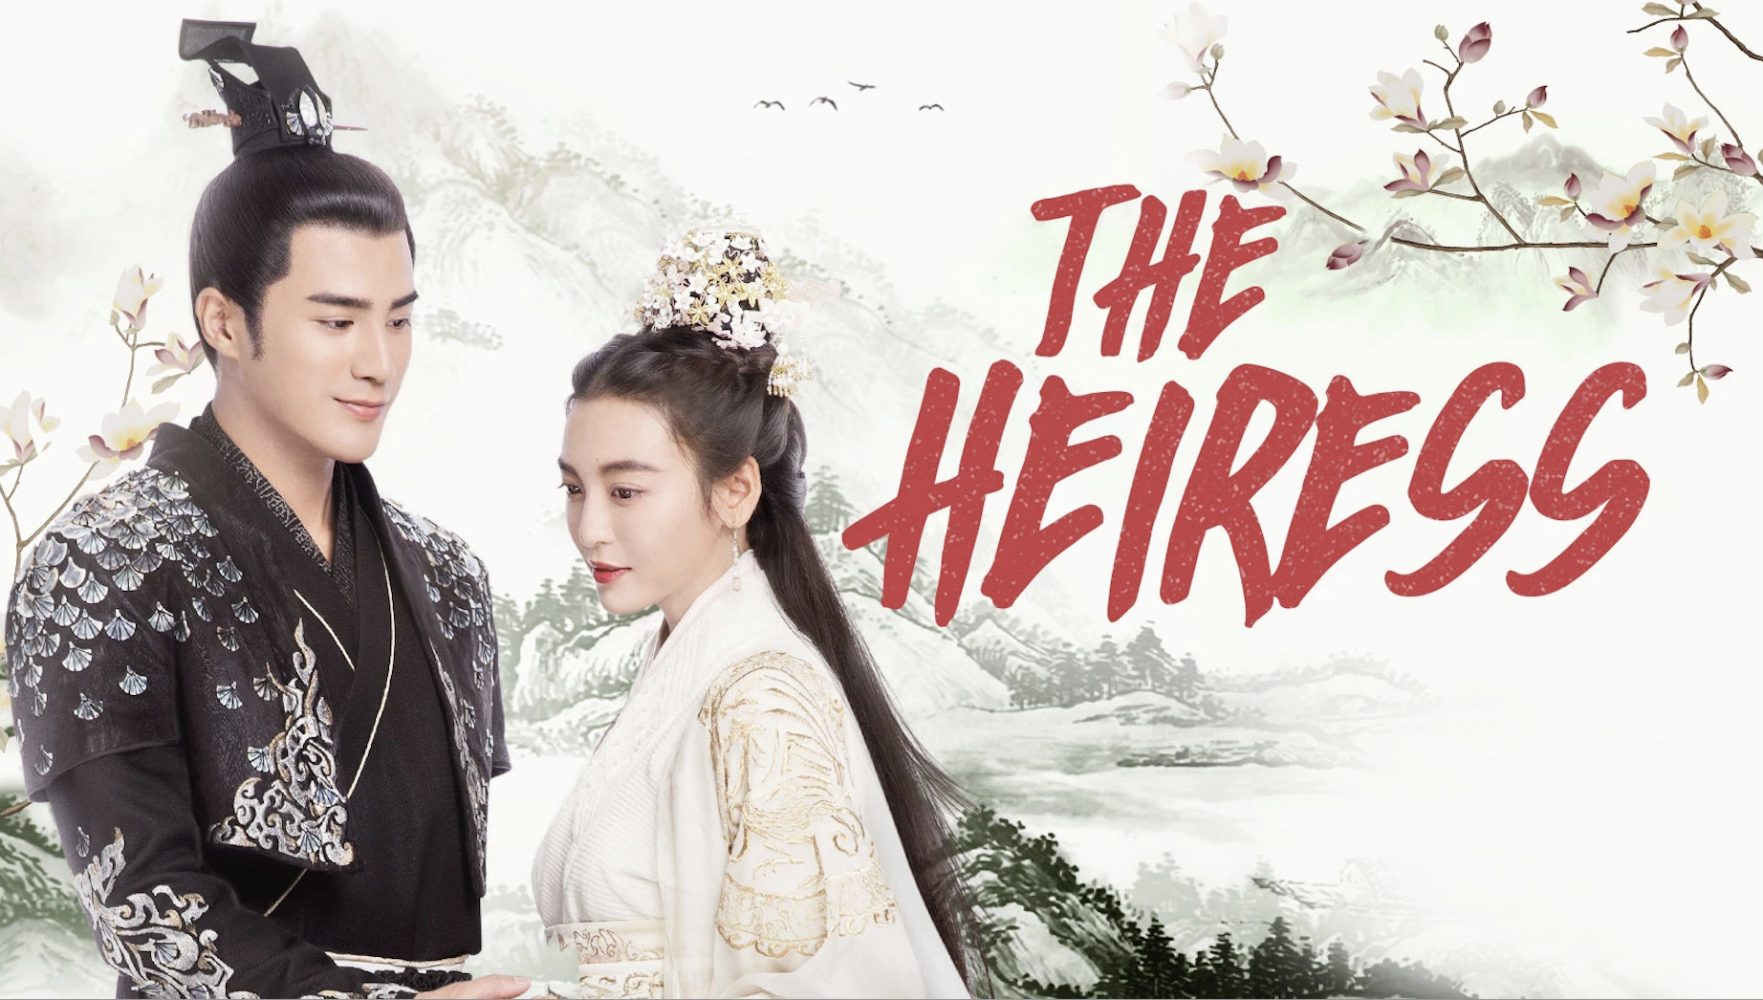 Phim của Vương An Vũ đóng: Nữ thế tử – The heiress (2020)